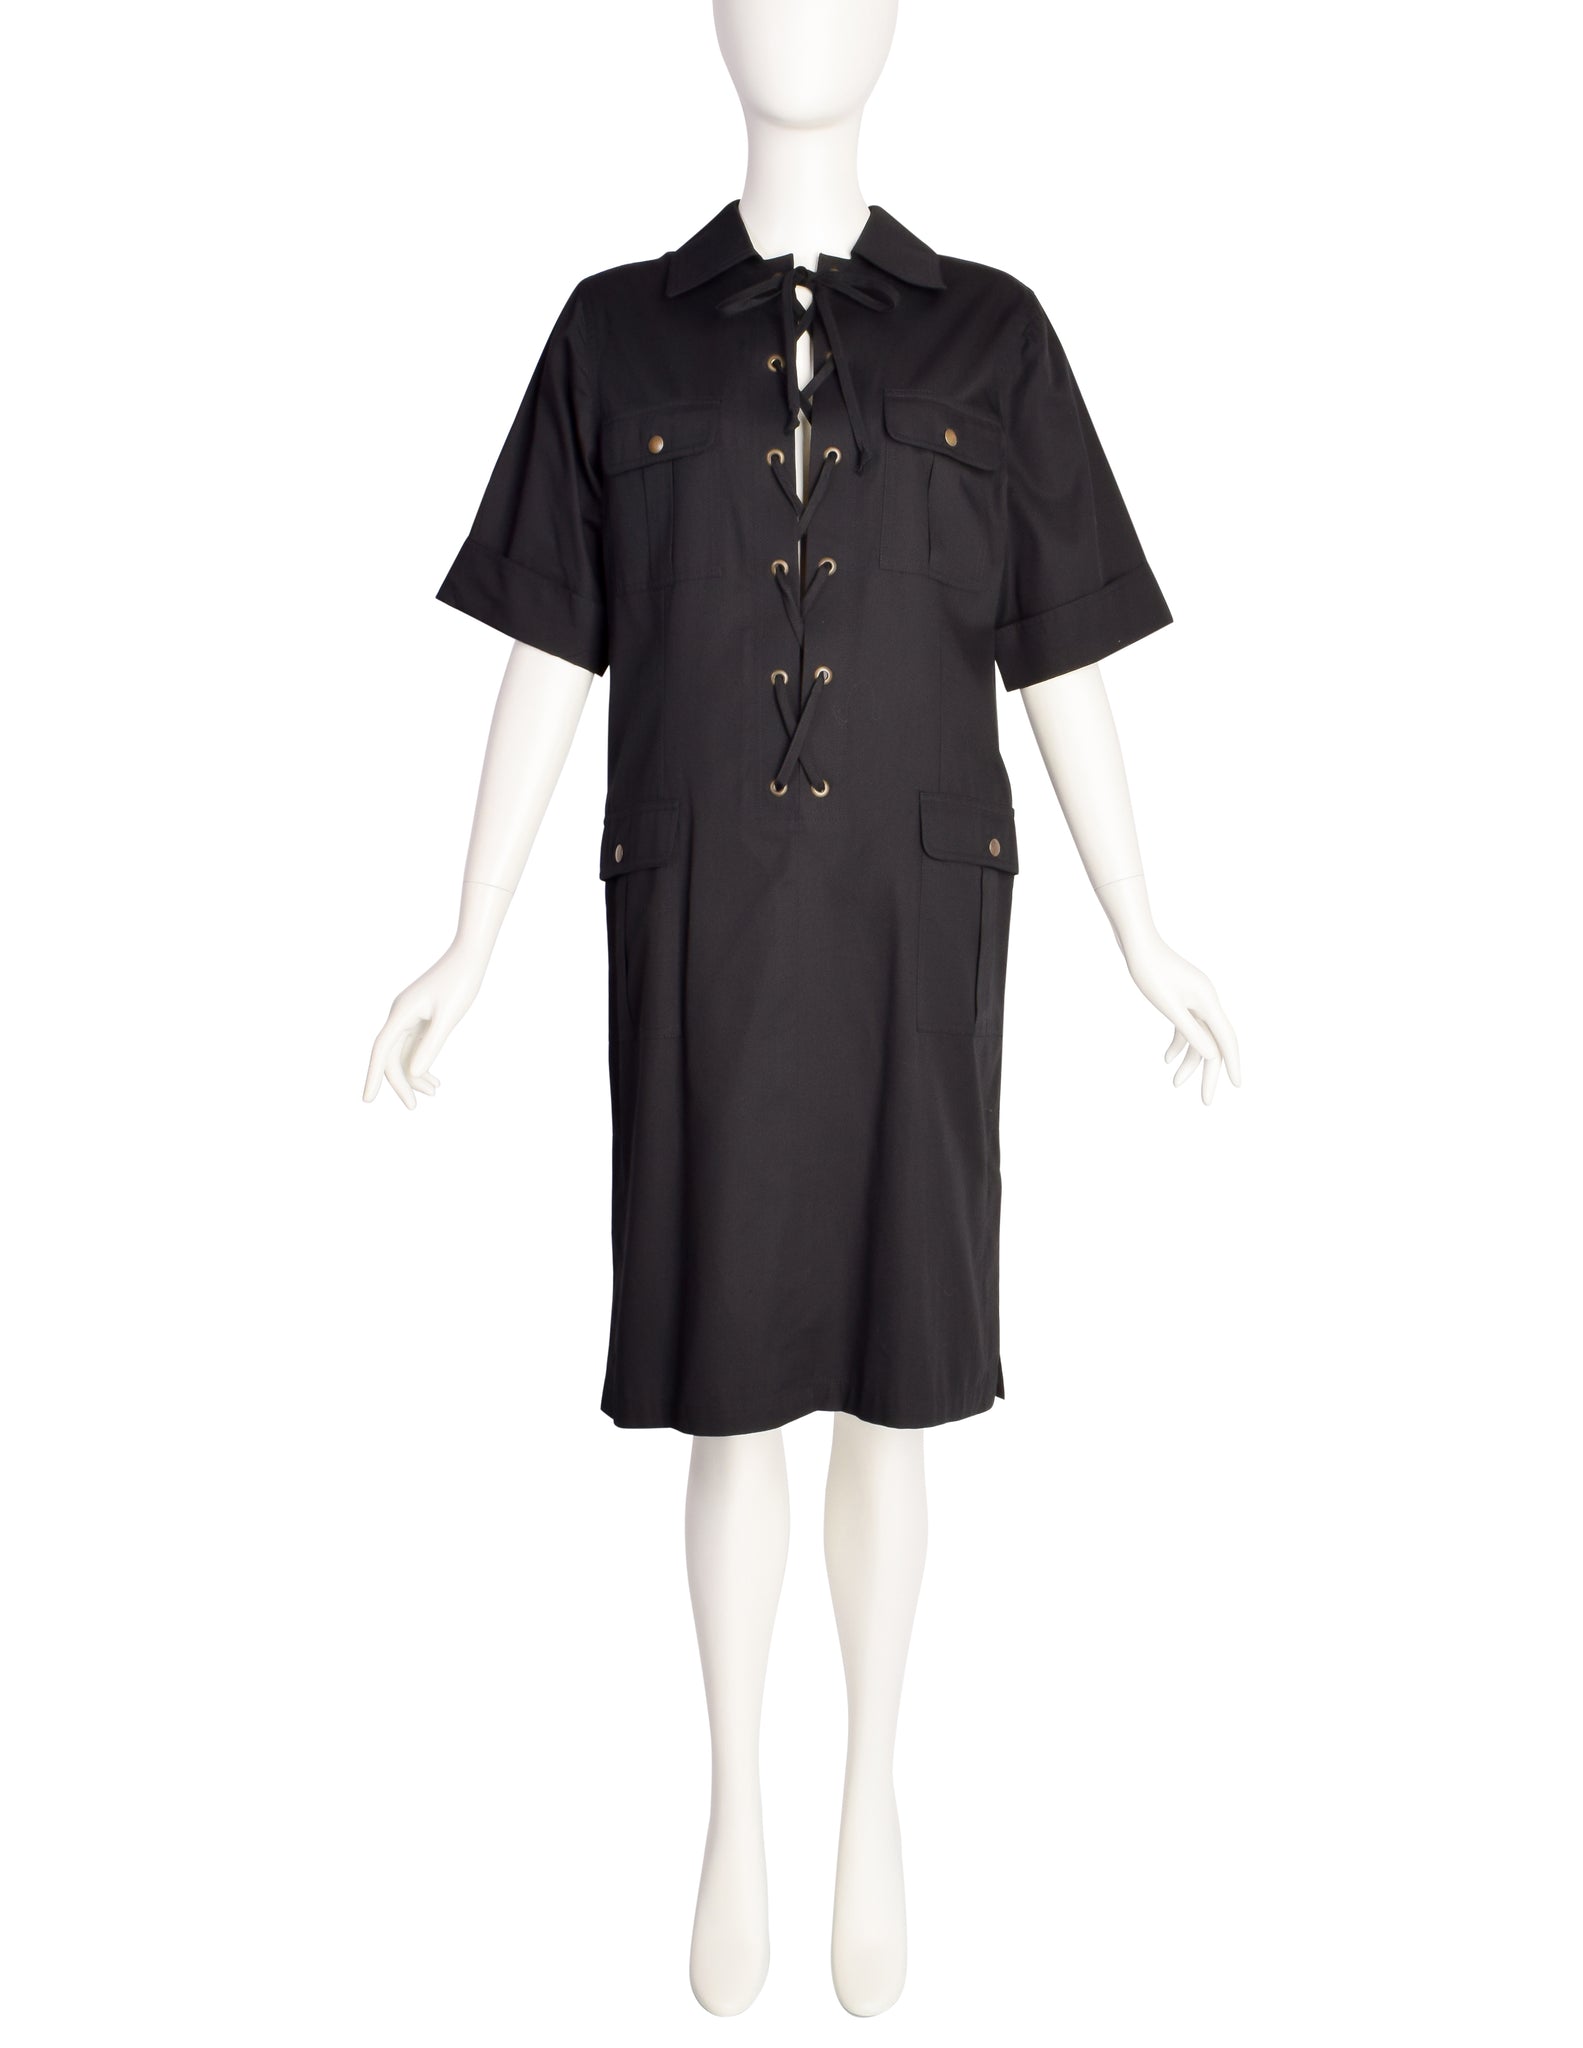 Yves Saint Laurent Vintage 1990s Iconic Black Cotton Safari Redux Dress